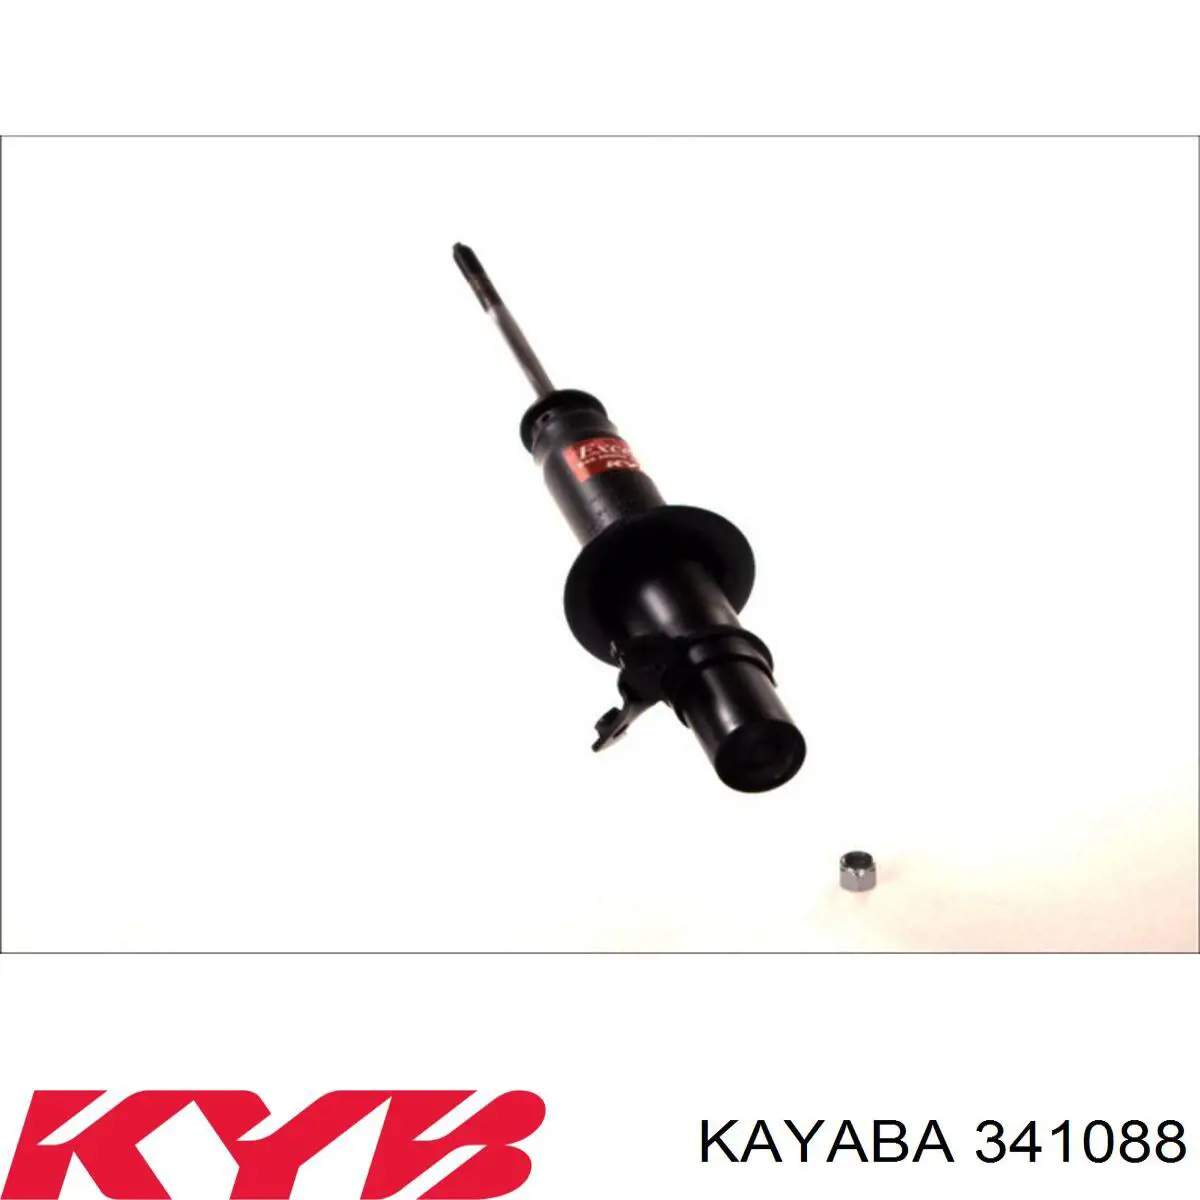 341088 Kayaba amortiguador delantero izquierdo